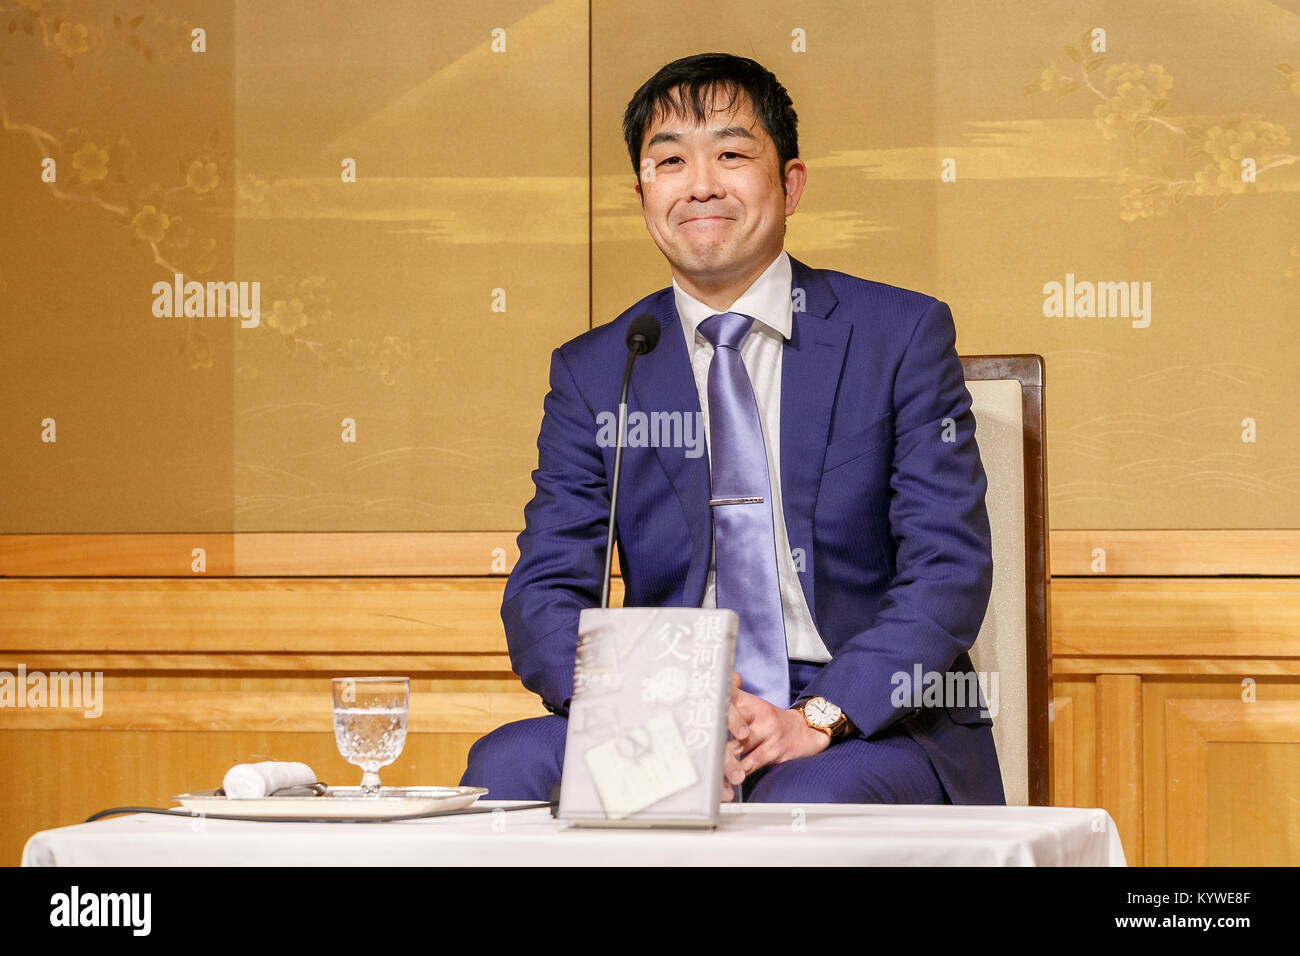 158Naoki il vincitore del Premio Yoshinobu Kadoi partecipa a una conferenza stampa presso l'Imperial Hotel on gennaio 16, 2018 a Tokyo, Giappone. Chisako Wakatake vinto 158Akutagawa premio per il suo libro ''Ora orade hitori egumo (io andrò lontano tutti da me)'', lungo con Yuka Ishi che ha vinto il premio per la ''Hyaku-nen doro (un centinaio di anni di fango)''. Yoshinobu Kadoi ricevuto 158Naoki premio per il suo libro ''Ginga tetsudo no chichi (il padre di Galactic ferroviario)." i due premi letterari erano stati stabiliti nel 1935 e sono assegnati annualmente ai migliori grave storia pubblicata in un giornale o m Foto Stock